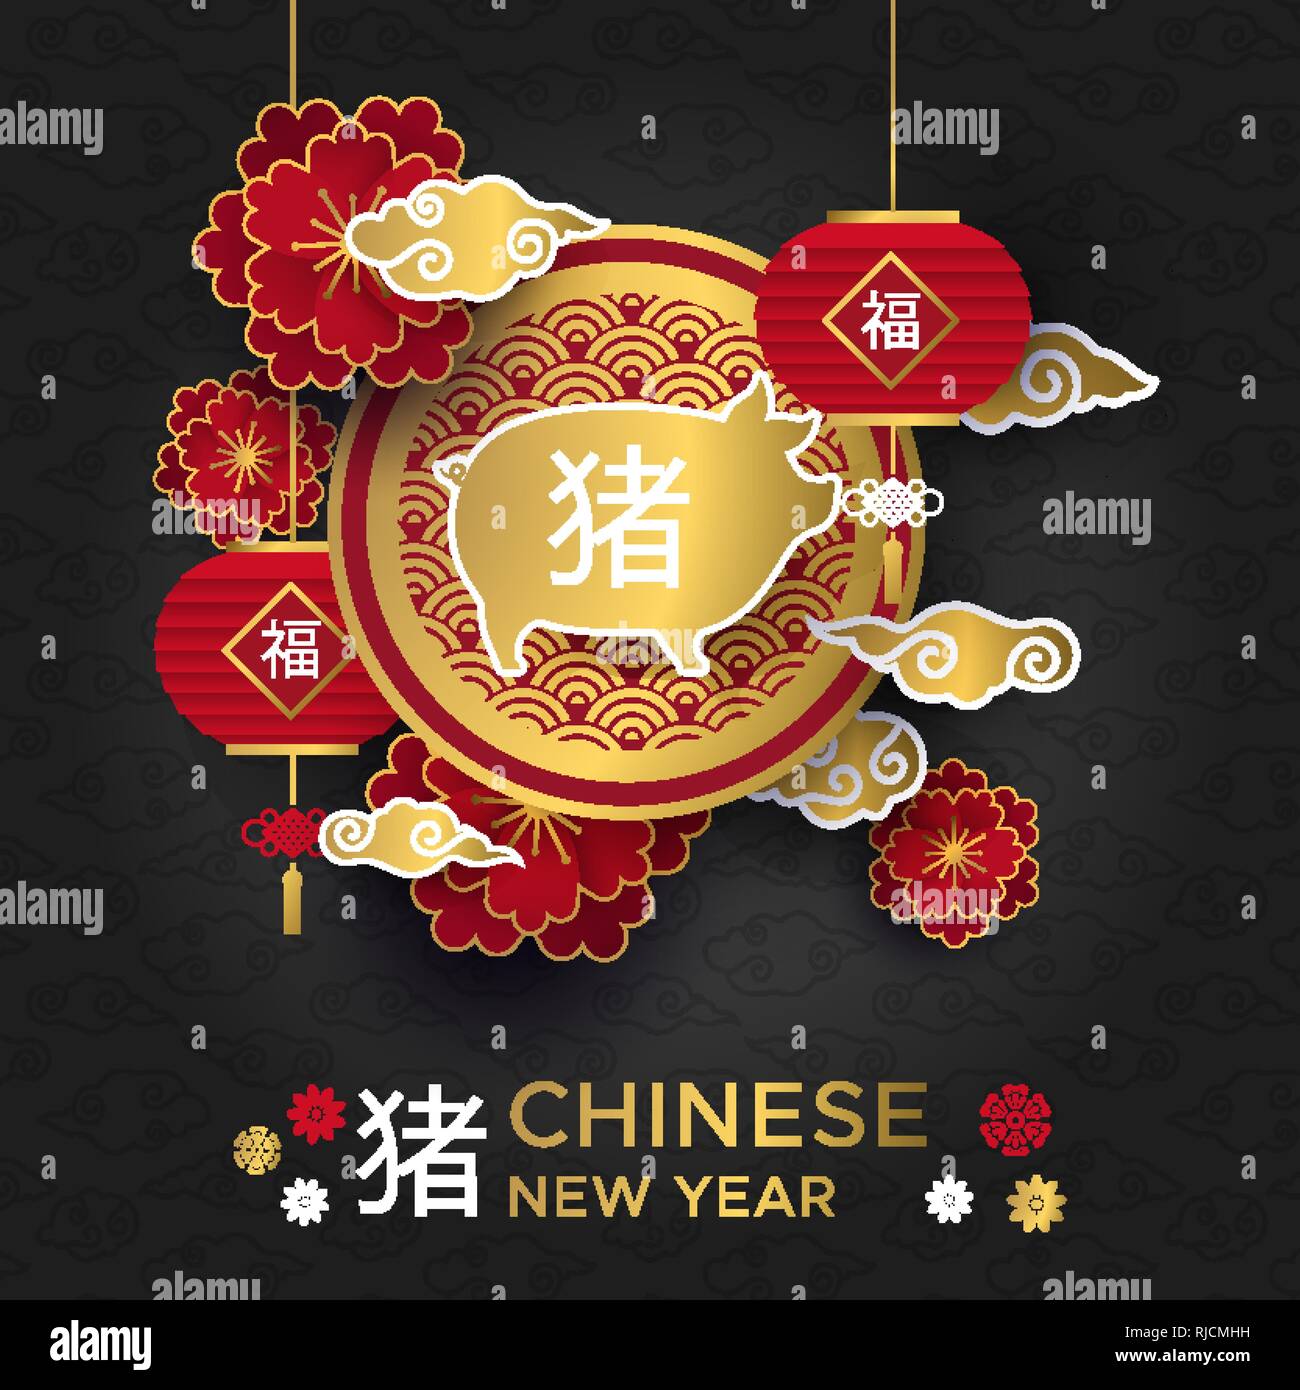 Chinesisches Neujahr 2019 traditionelle schwarze Grußkarte Abbildung mit roten asiatische Dekoration, gold Hog und Blumen in 2-in-1-Papier. Kalligraphie Symbo Stock Vektor